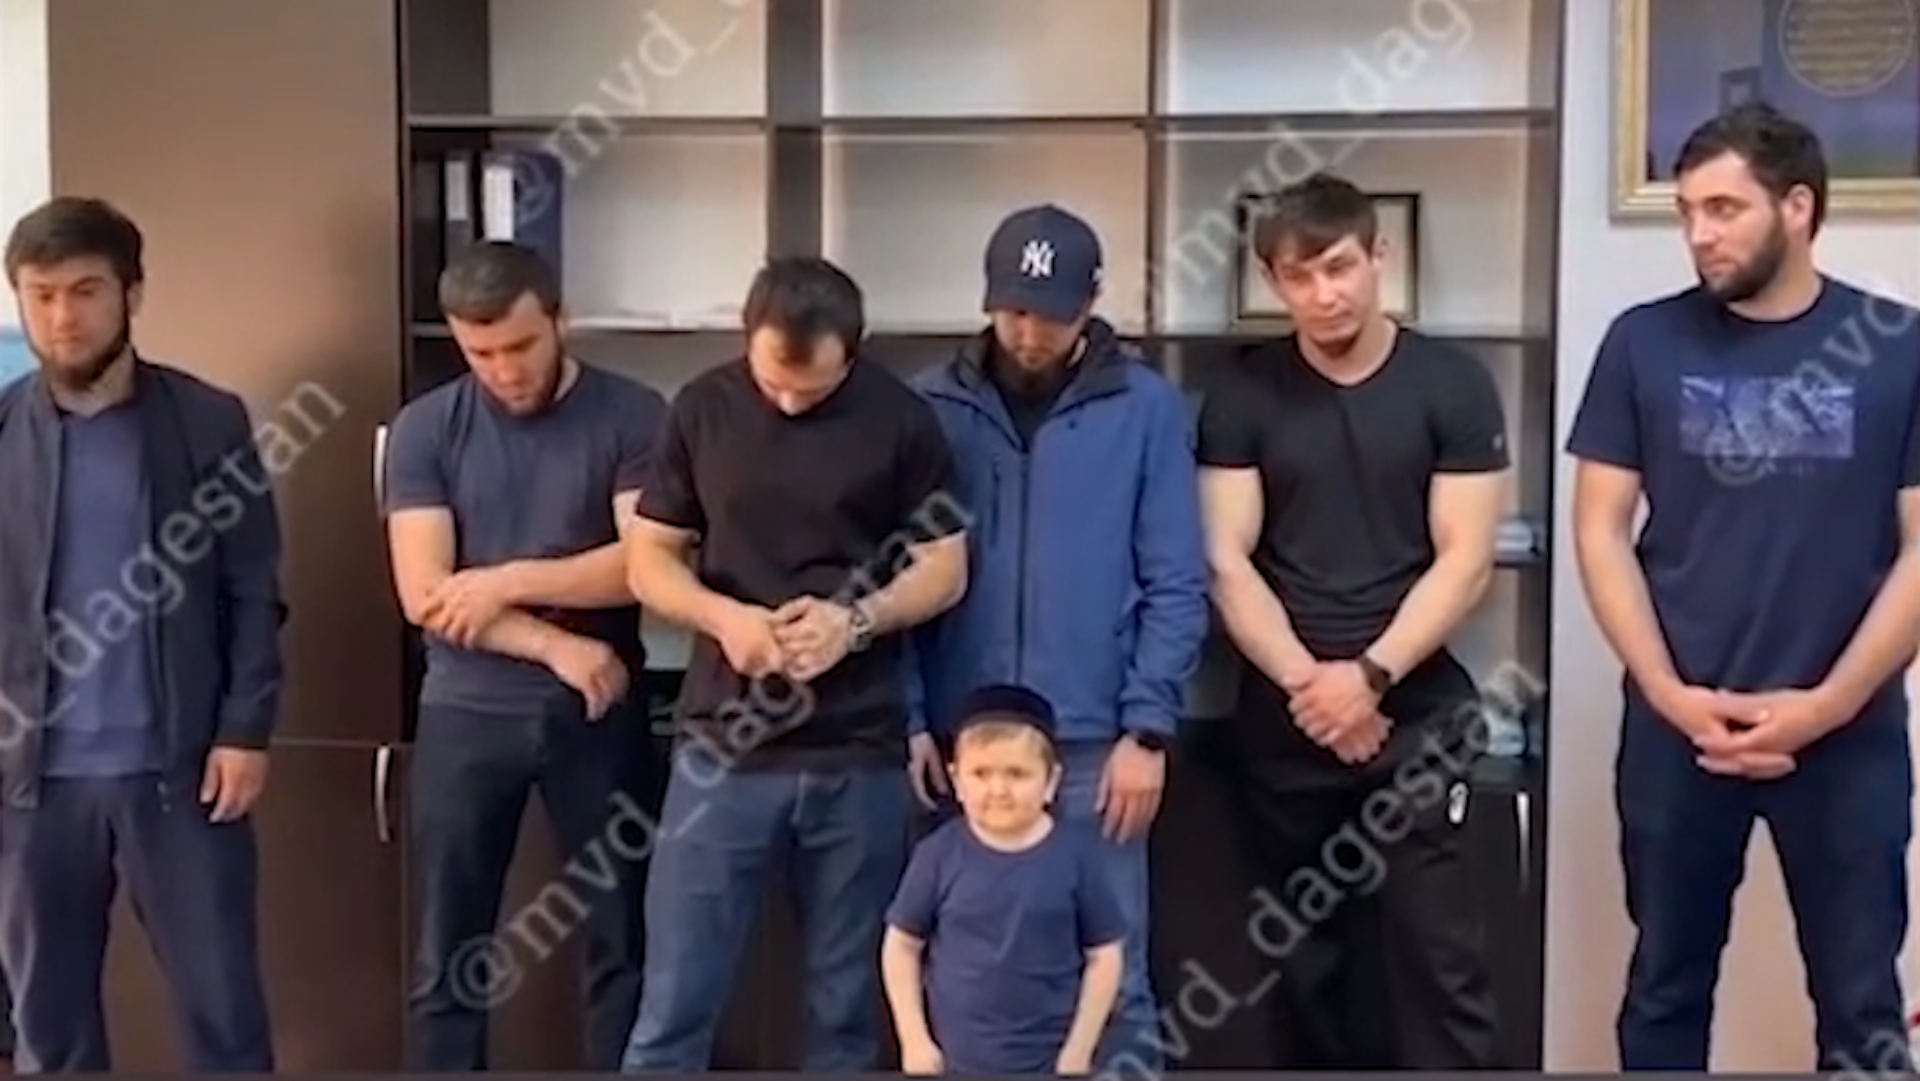 Hasbulla fue arrestado junto a siete personas más por causar caos en las calles de Rusia (Foto: MVD_dagestan)